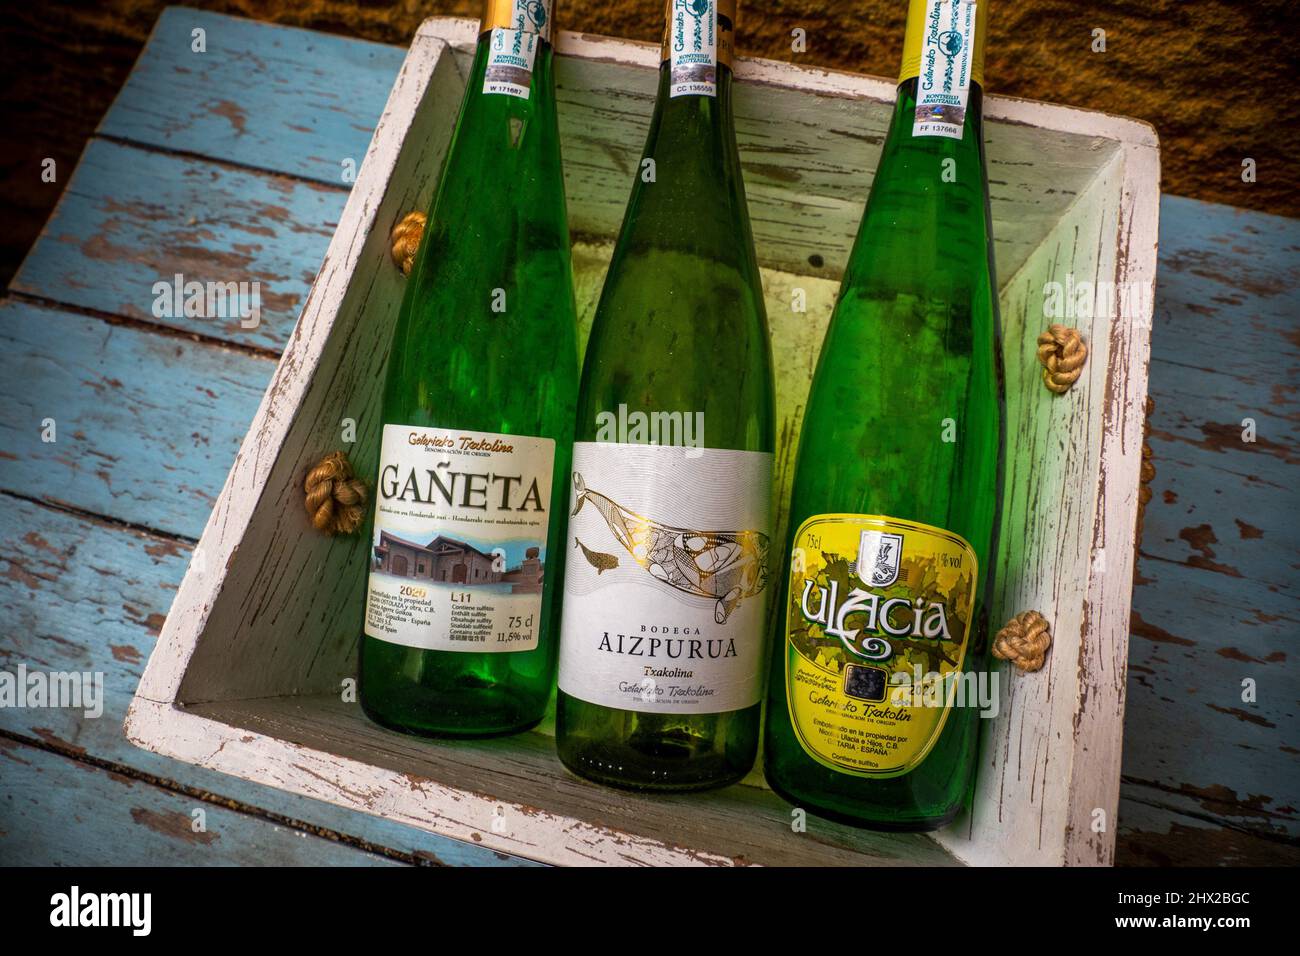 España, País Vasco, Guipúzcoa, Comida y bebida, vinos Txacoli de los alrededores de Guetaria. Foto de stock